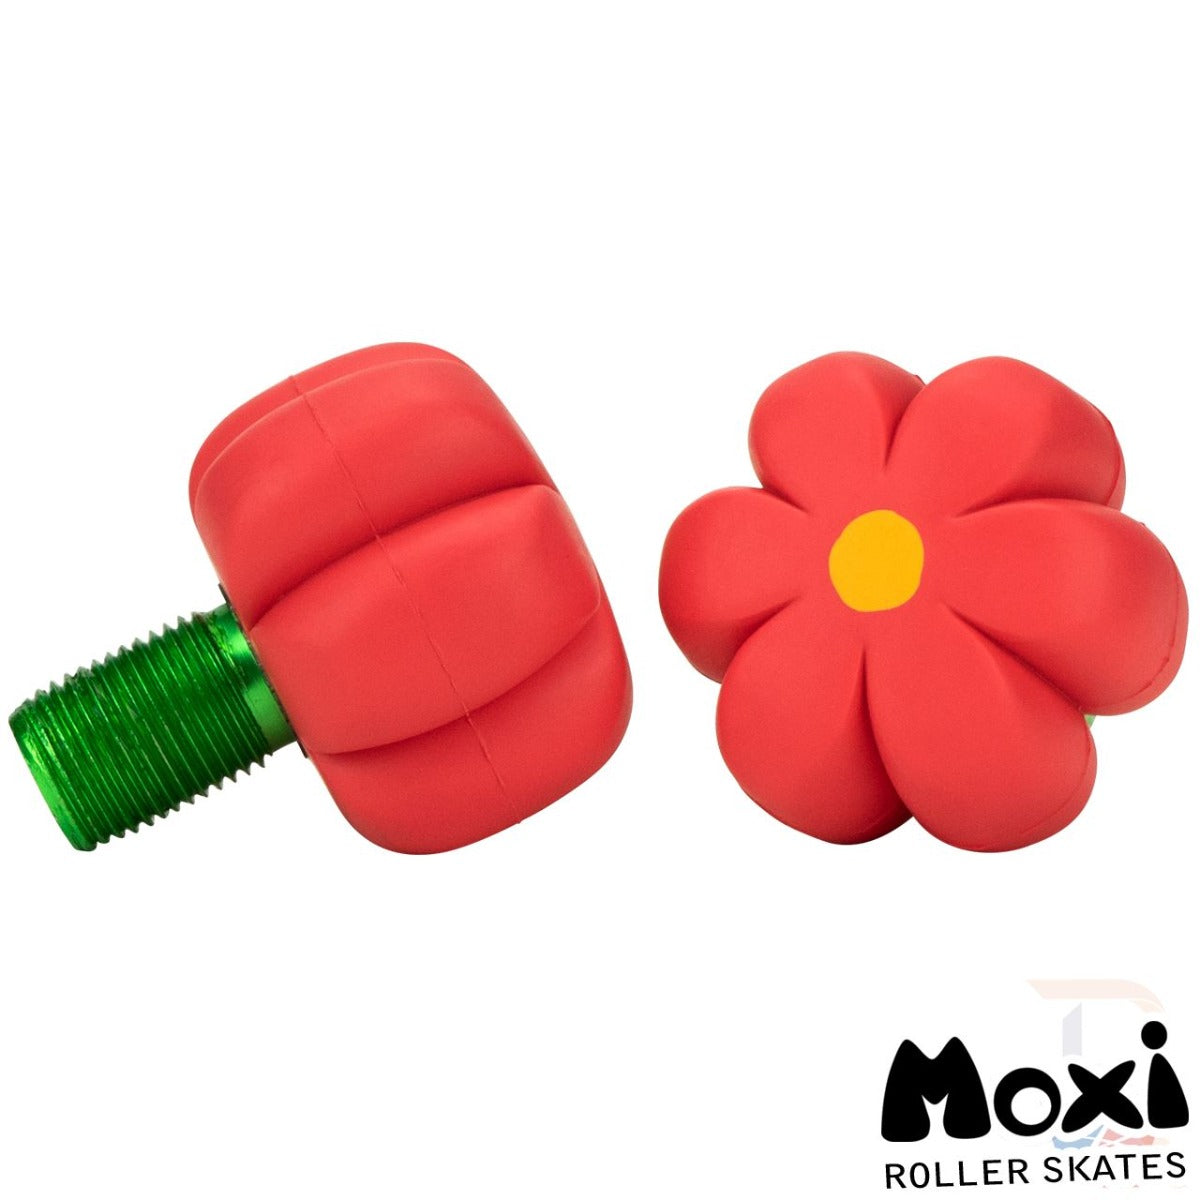 Moxi Brake Petal Roller Skate Toe Stops - Red Hibiscus - Dual